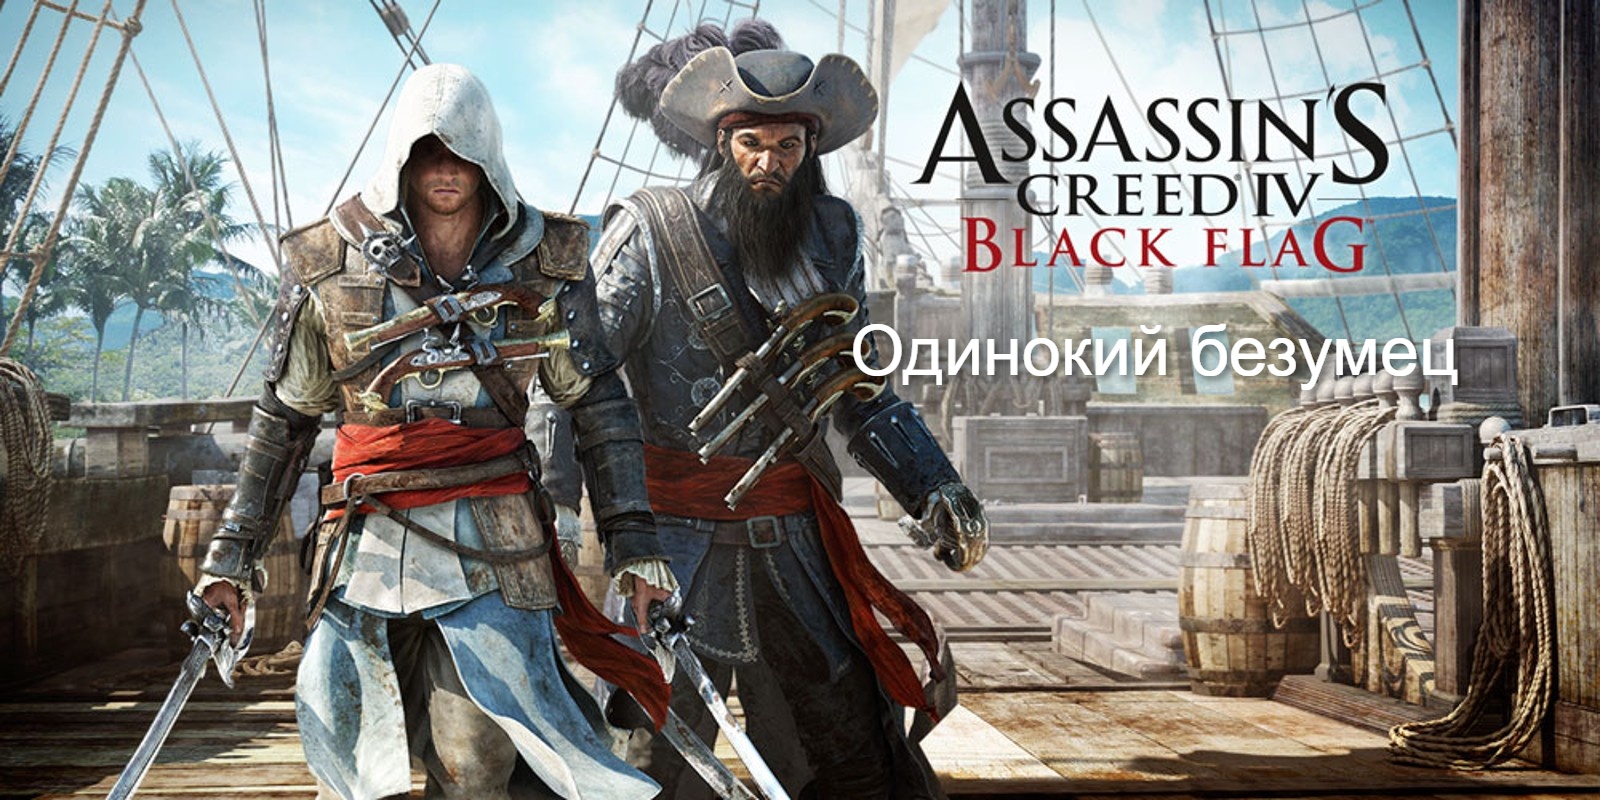 Прохождение Assassin's Creed 4_ Black Flag (Чёрный флаг). Одинокий безумец.mp4